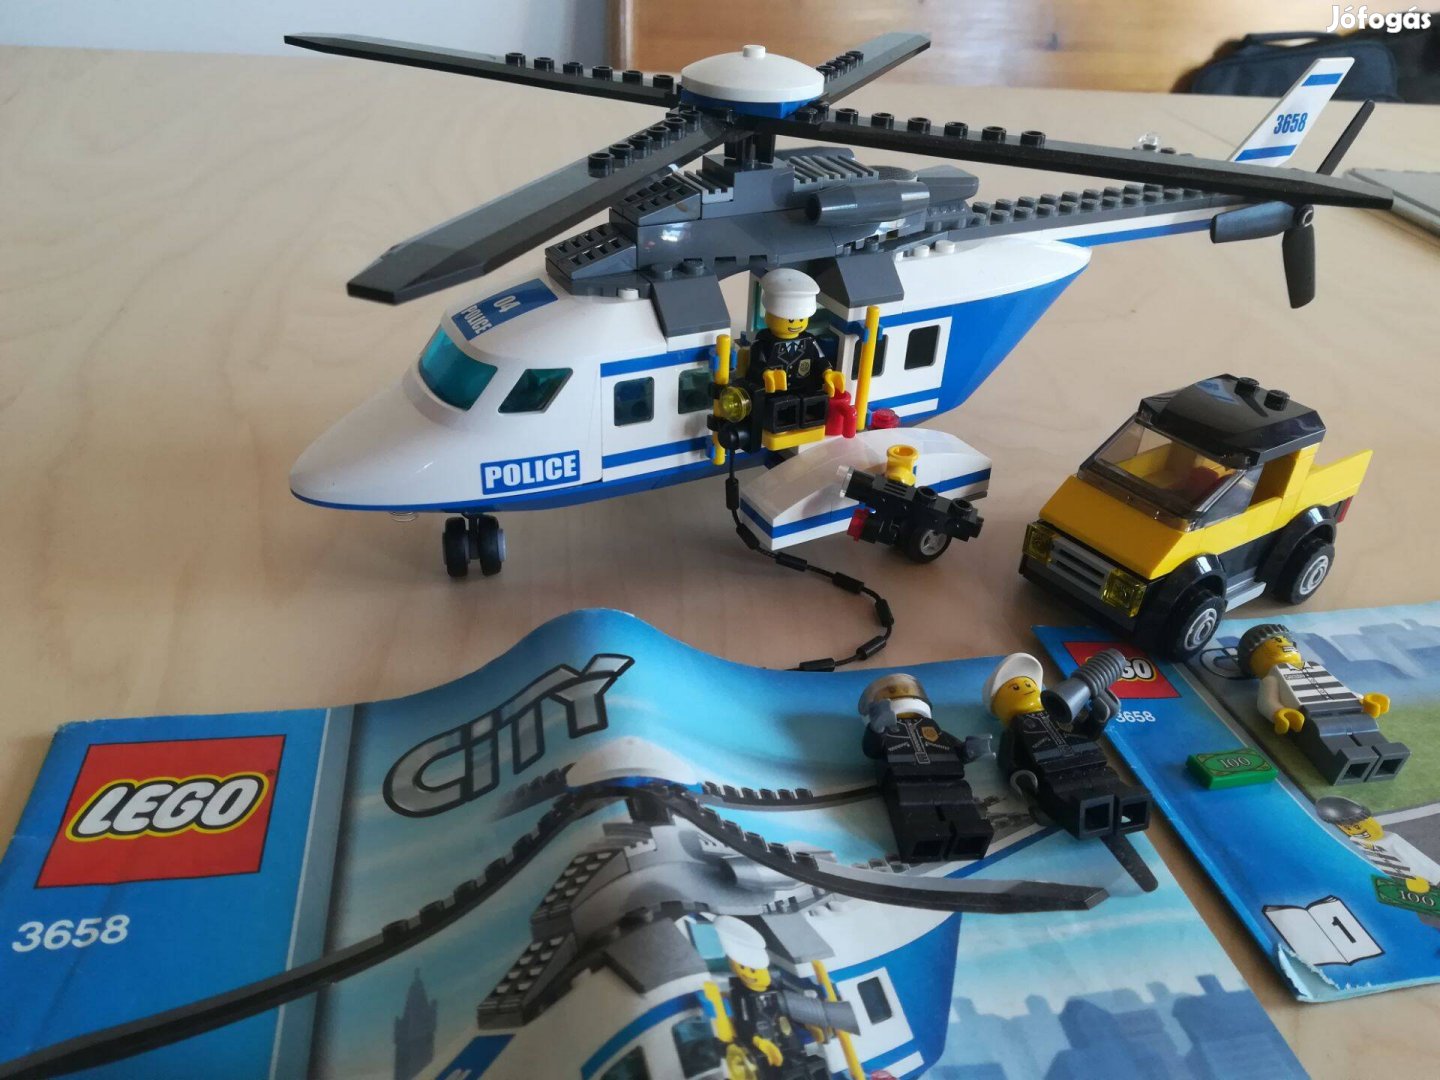 LEGO City 3658 - Rendőrségi helikopter